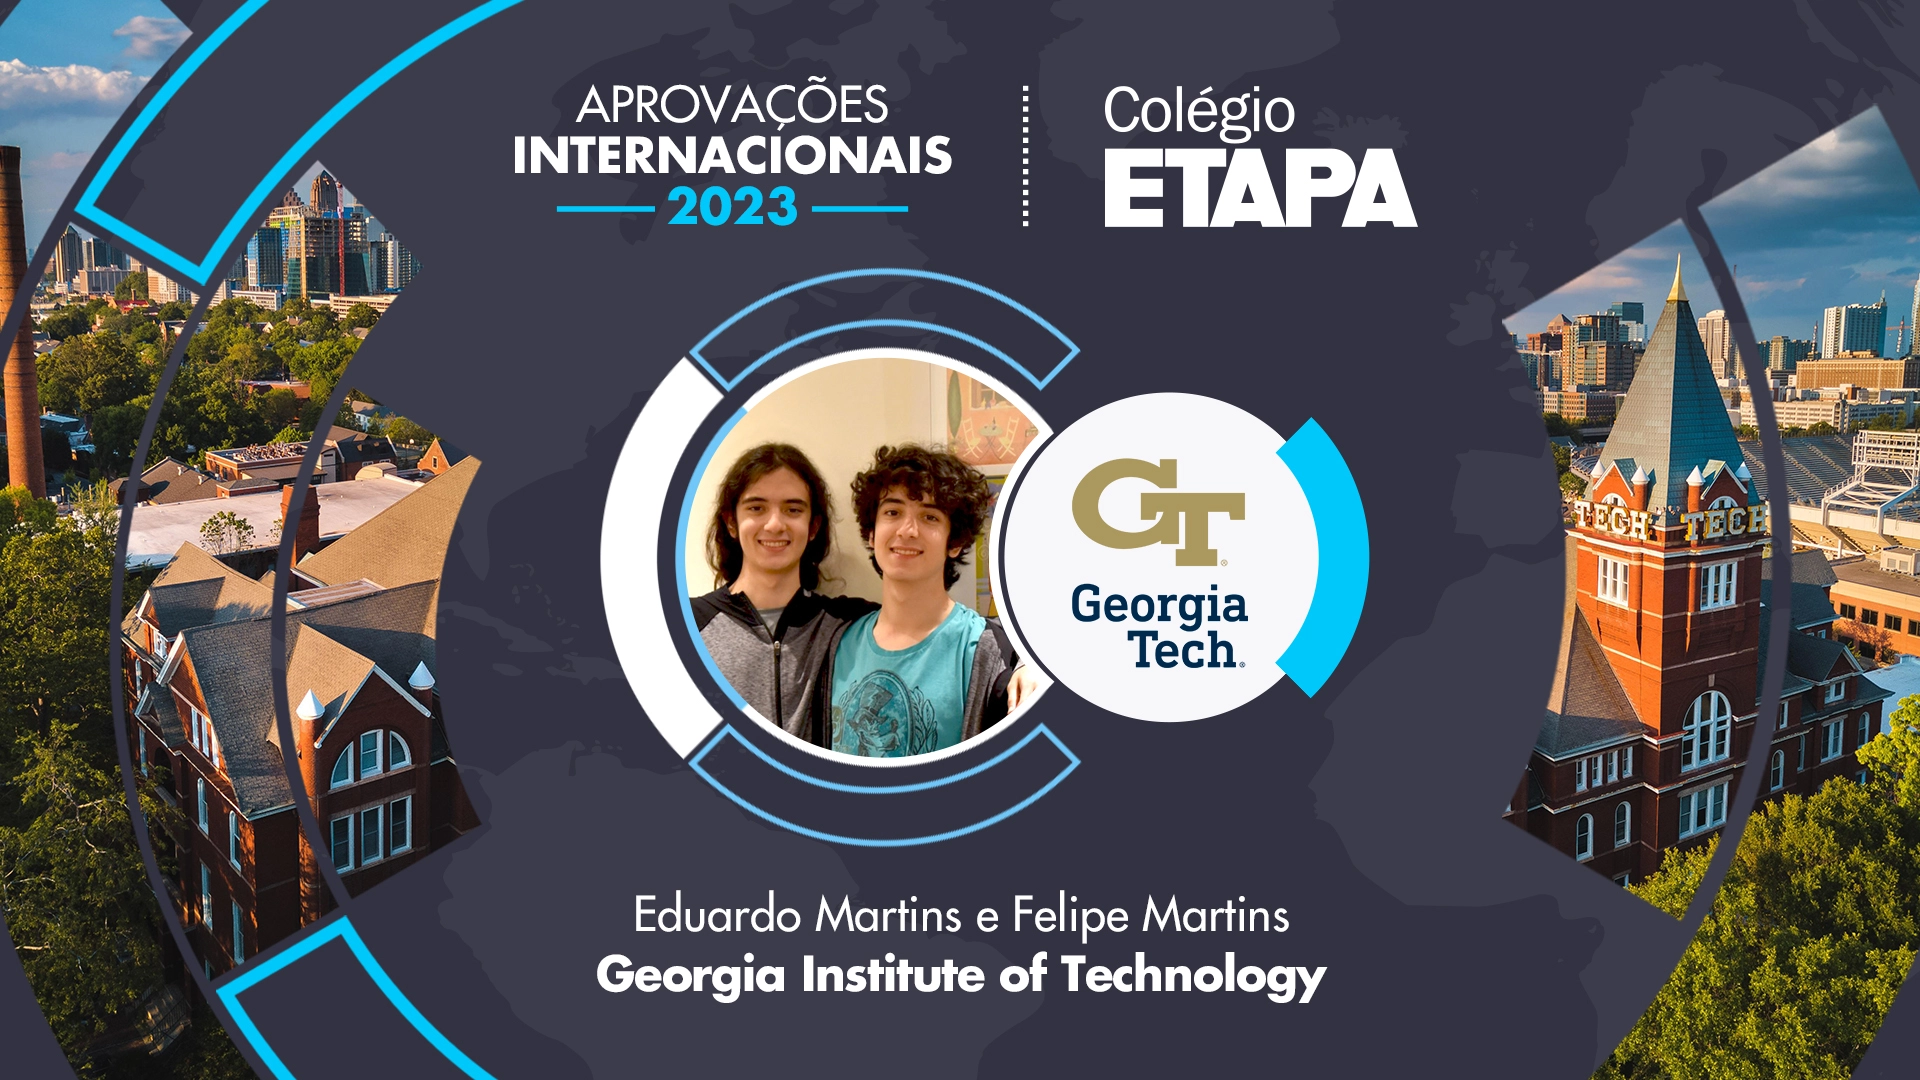 Eduardo e Felipe Martins foram aprovados em Engenharia Elétrica na Georgia Tech.